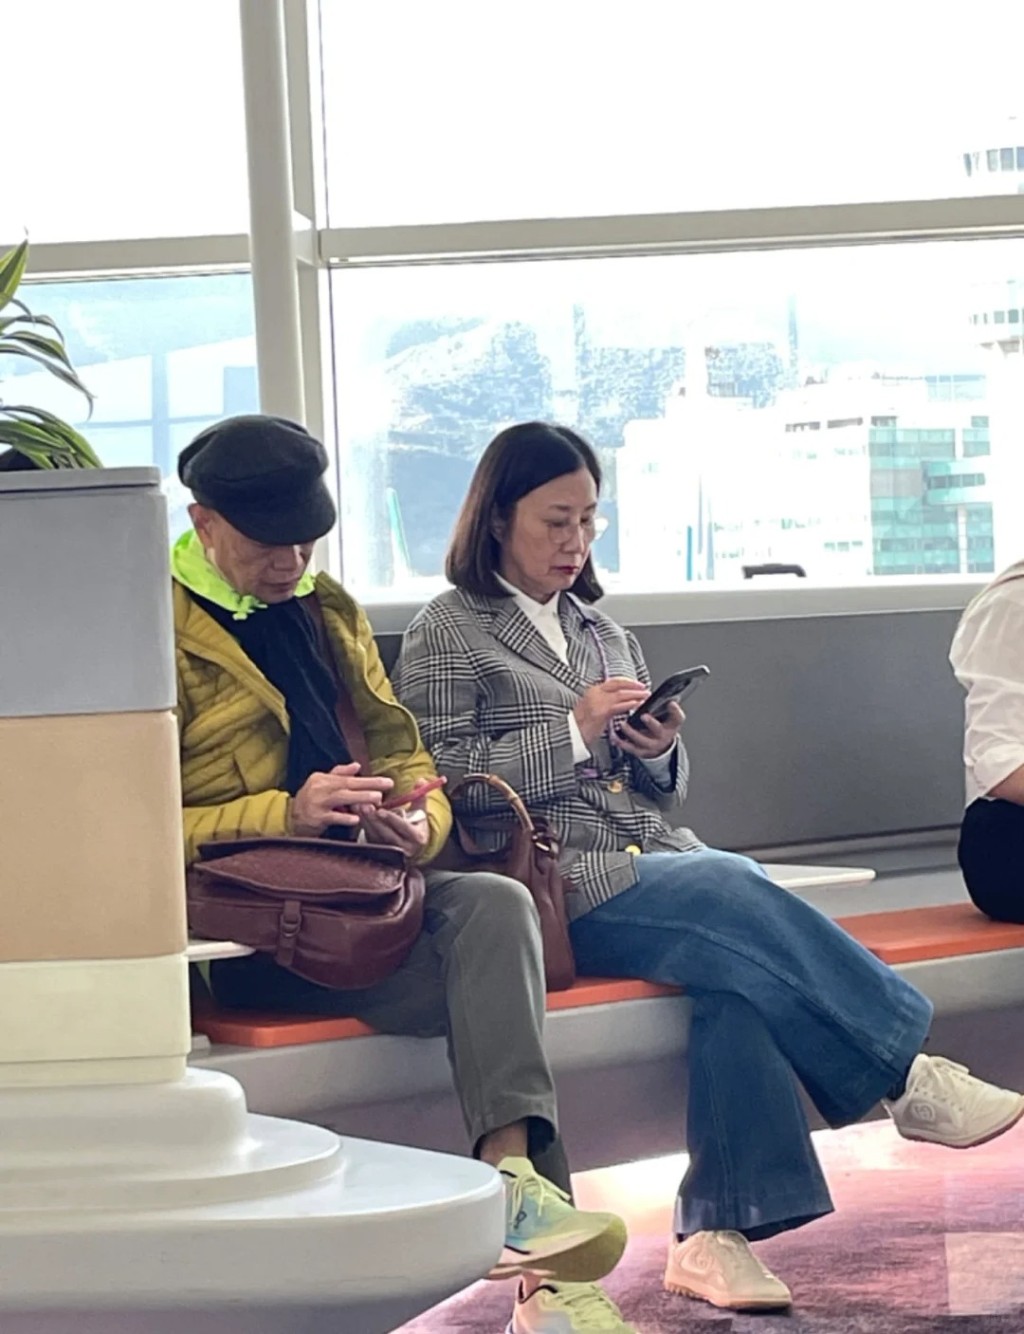 日前有网民分享罗家英与汪明荃在机场的照片。